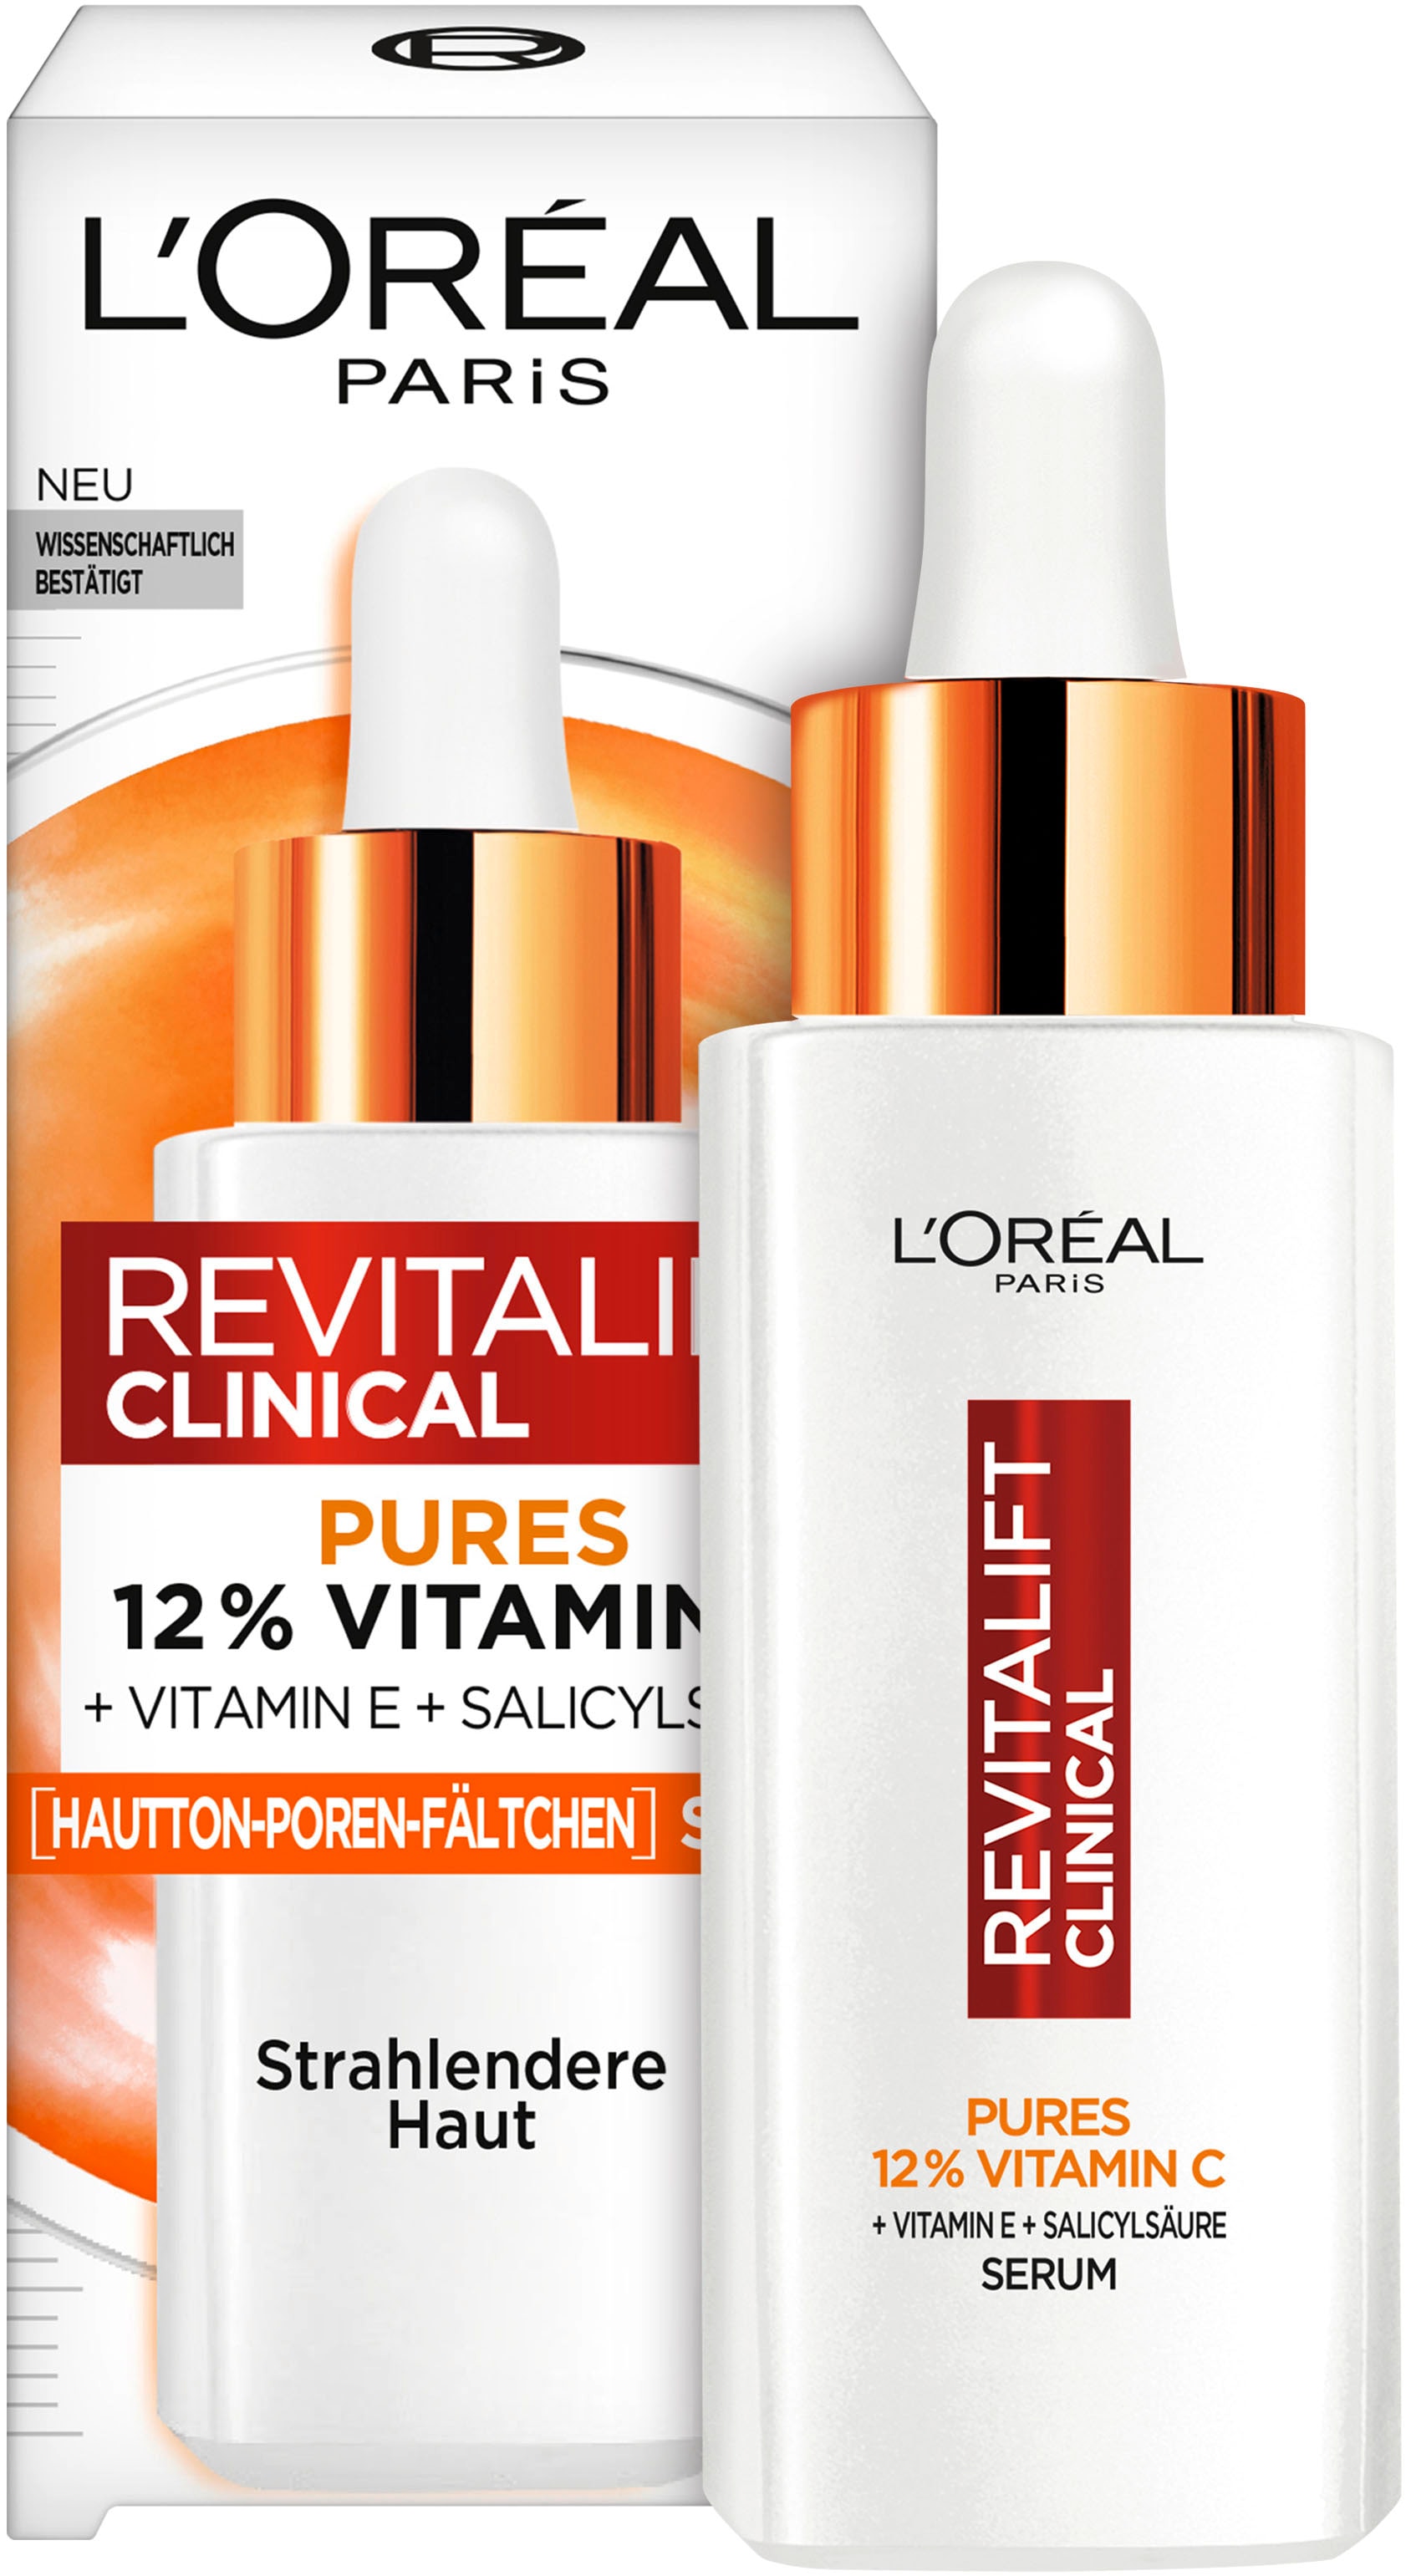 Gesichtsserum »L'Oréal Paris Gesichtsserum mit Vitamin C«, anioxidativ